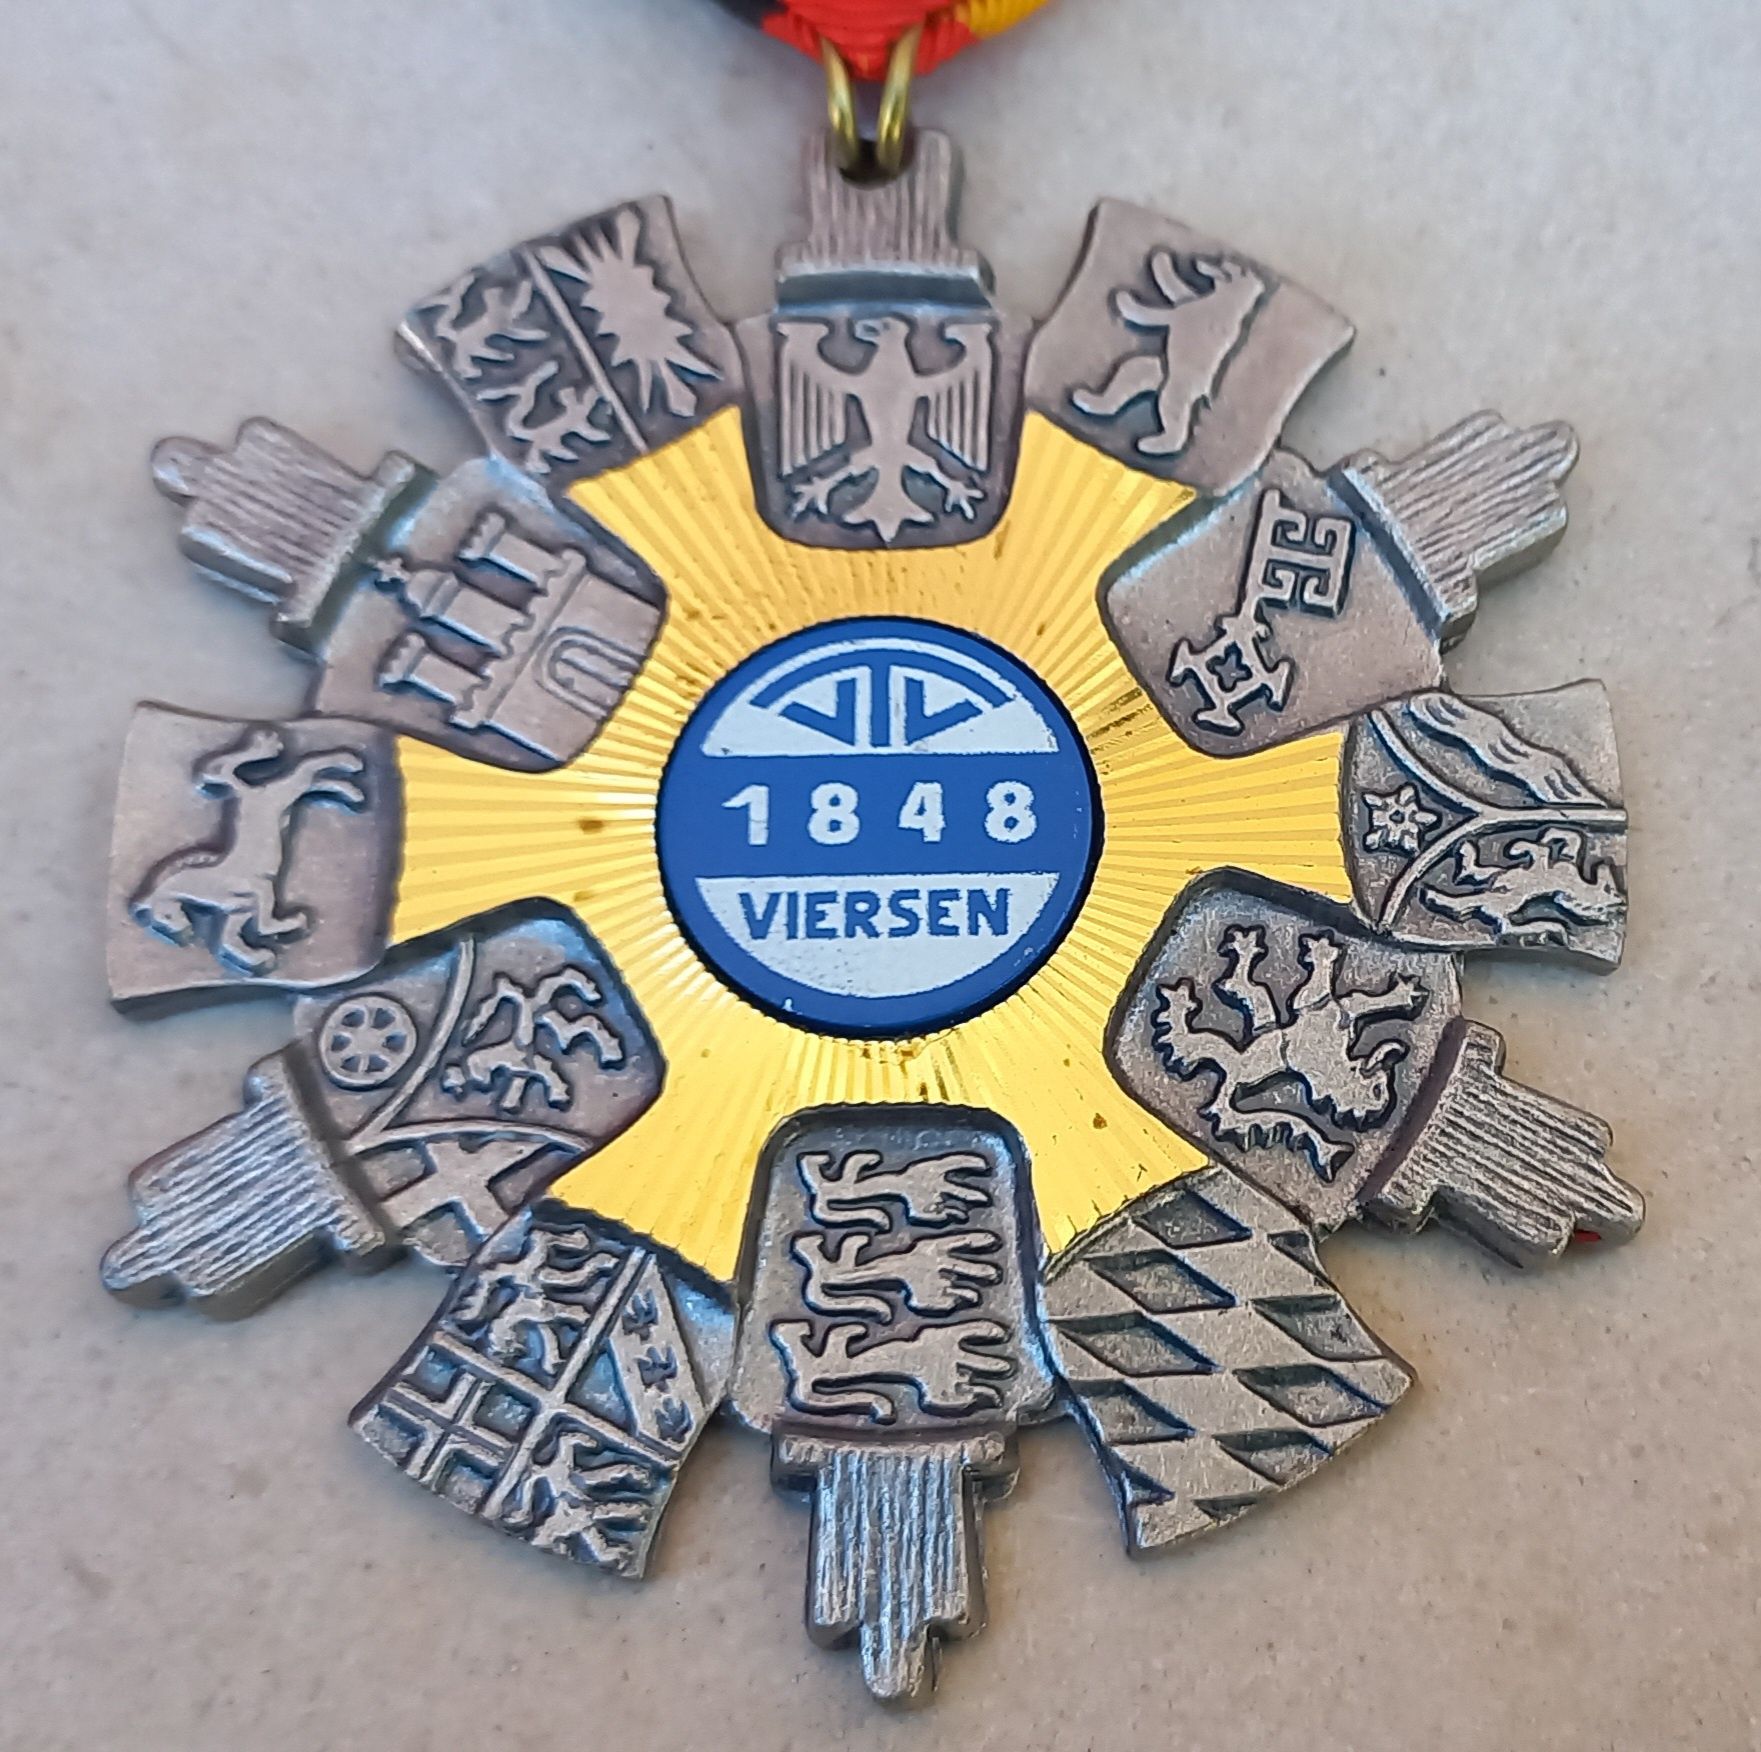 Conjunto de medalhas antigas da Alemanha